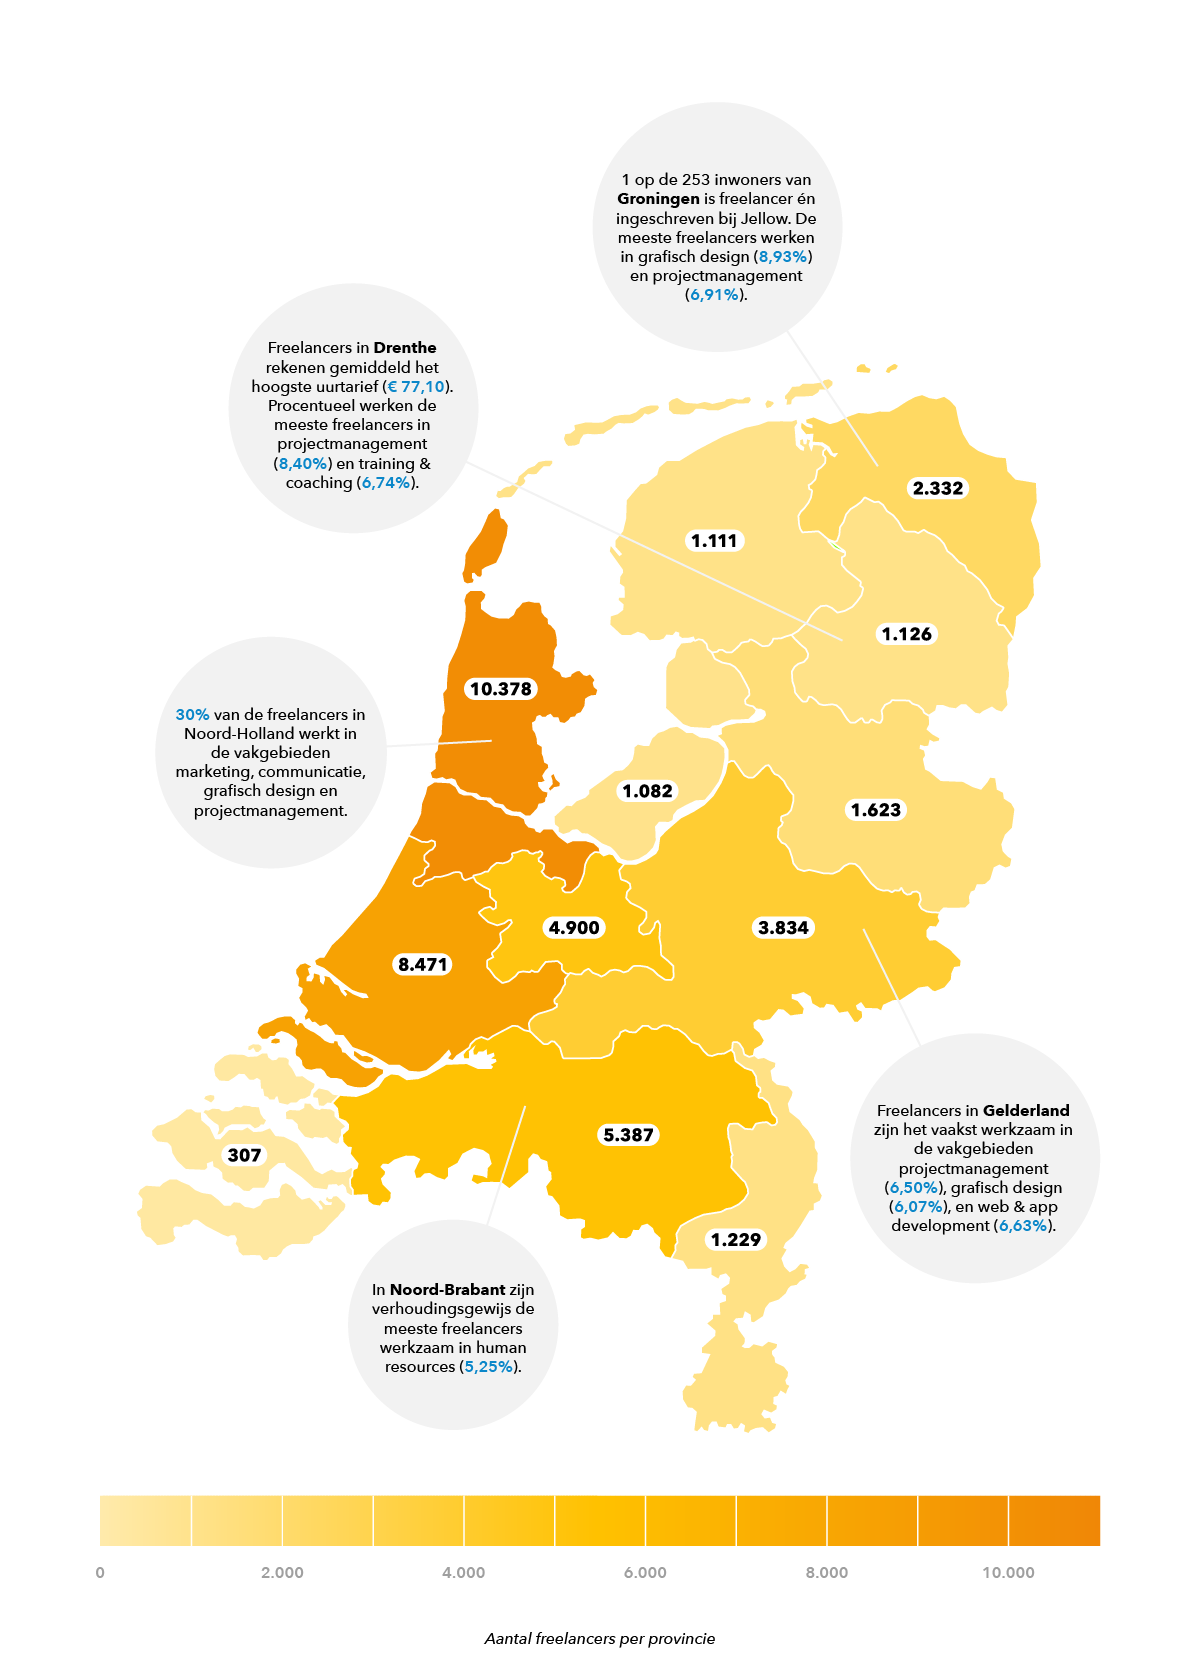 Aantal freelancers per provincie in Nederland in 2022